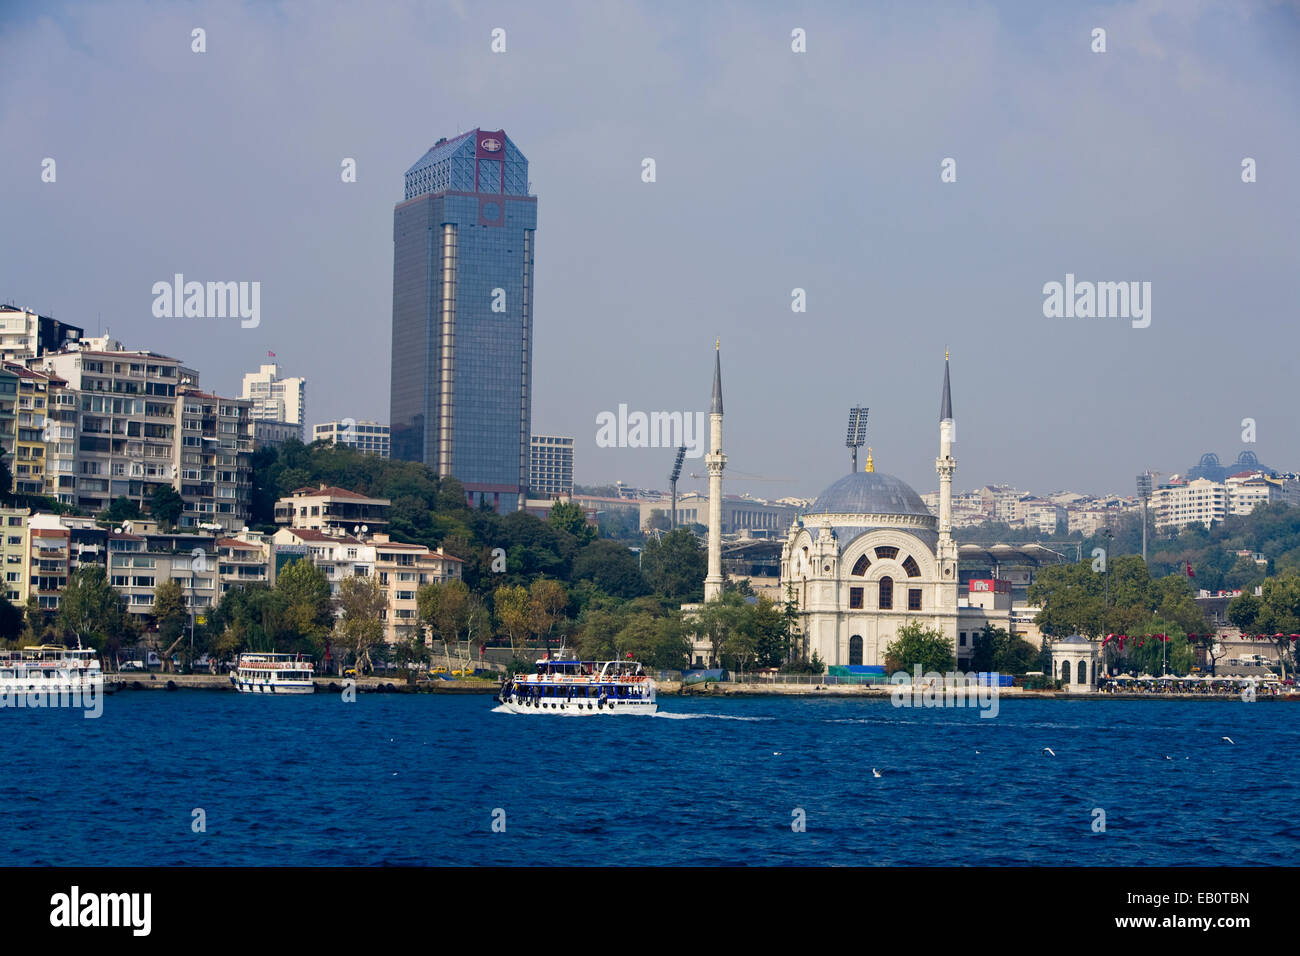 Une croisière excursion sur le Bosphore, Istanbul Européenne avec en arrière-plan, Istanbul, Turquie, Moyen-Orient Banque D'Images